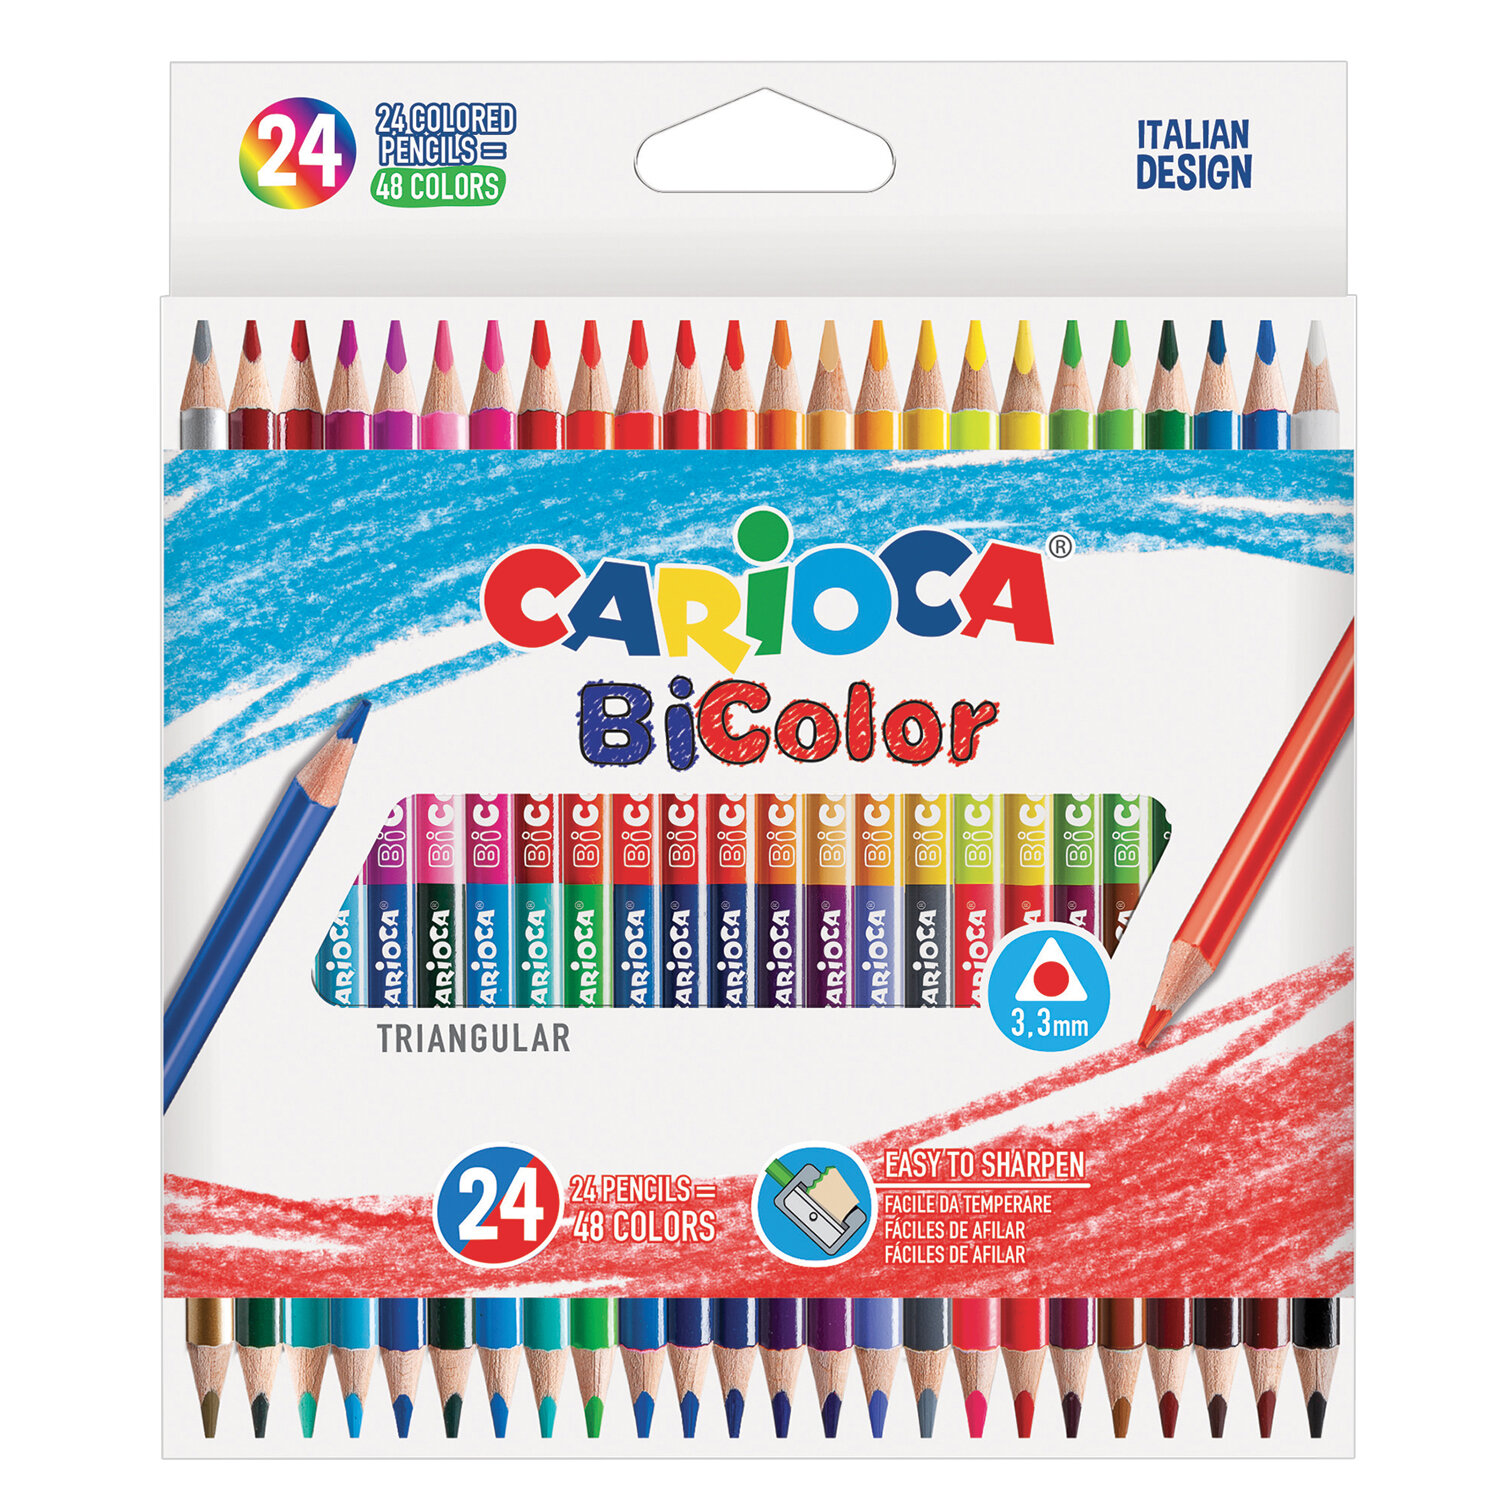 Карандаши двусторонние CARIOCA Bi-color, 24 штуки, 48 цветов, трехранные, заточенные, 43031